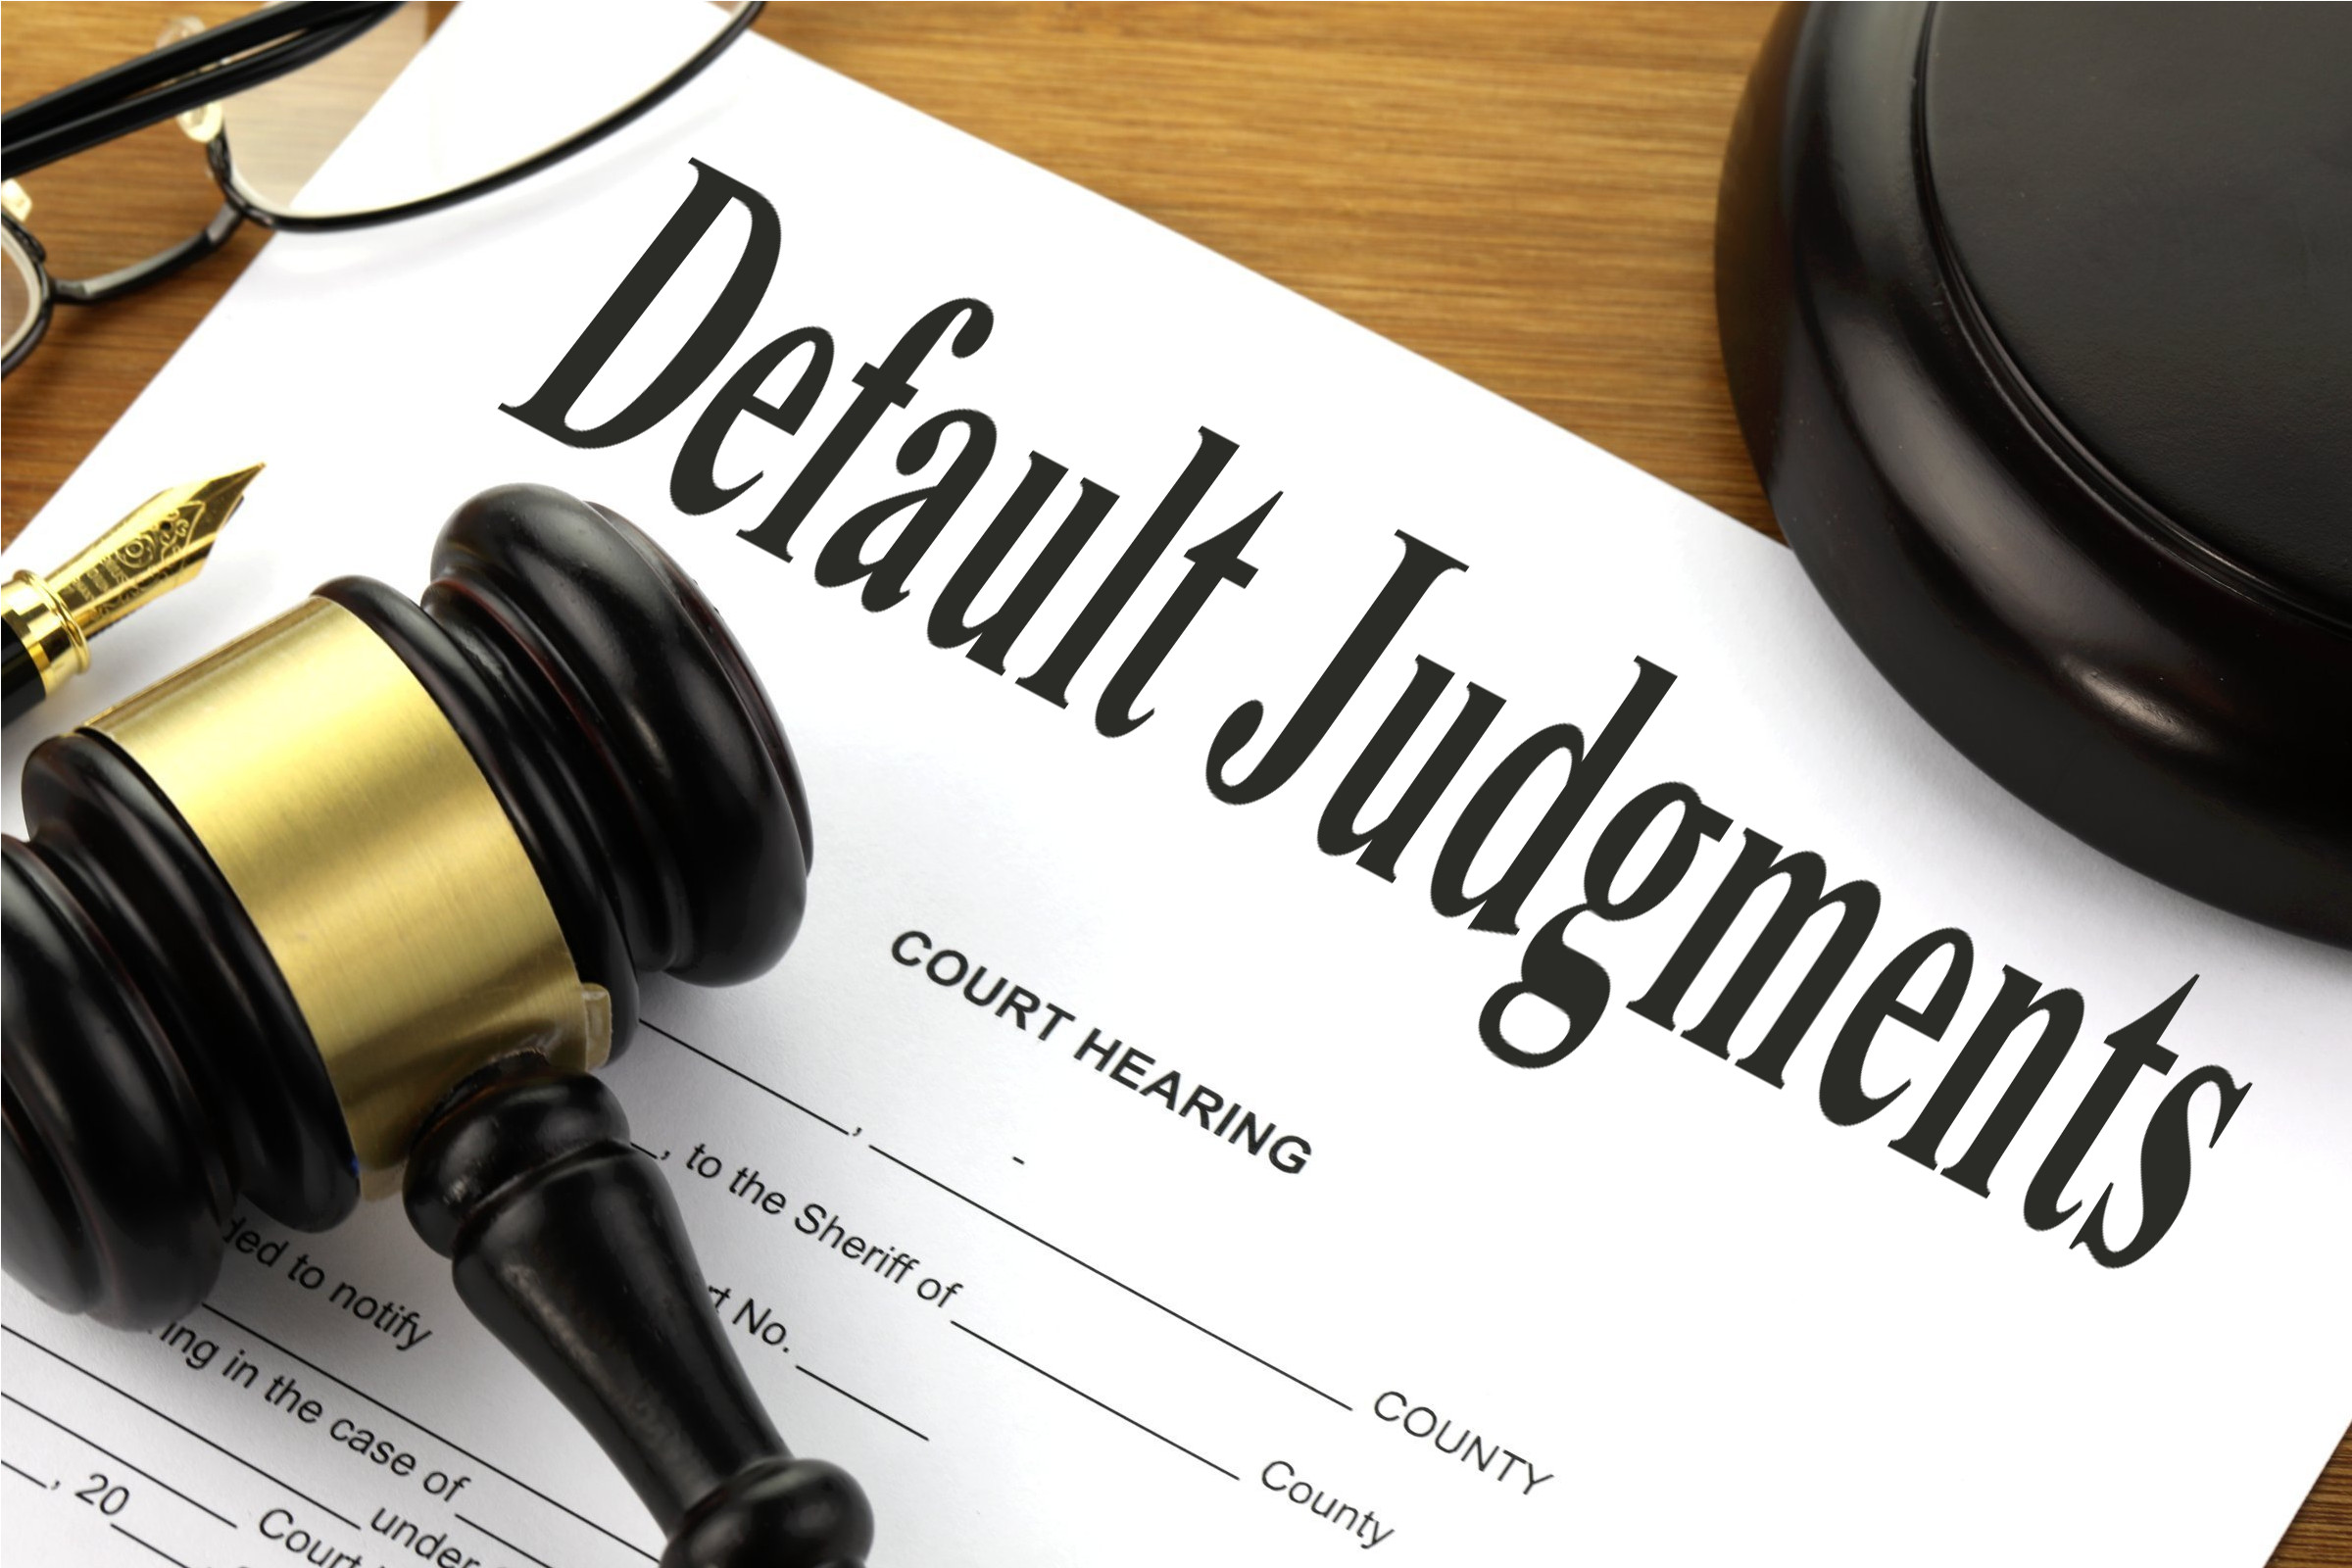 Default Judgments